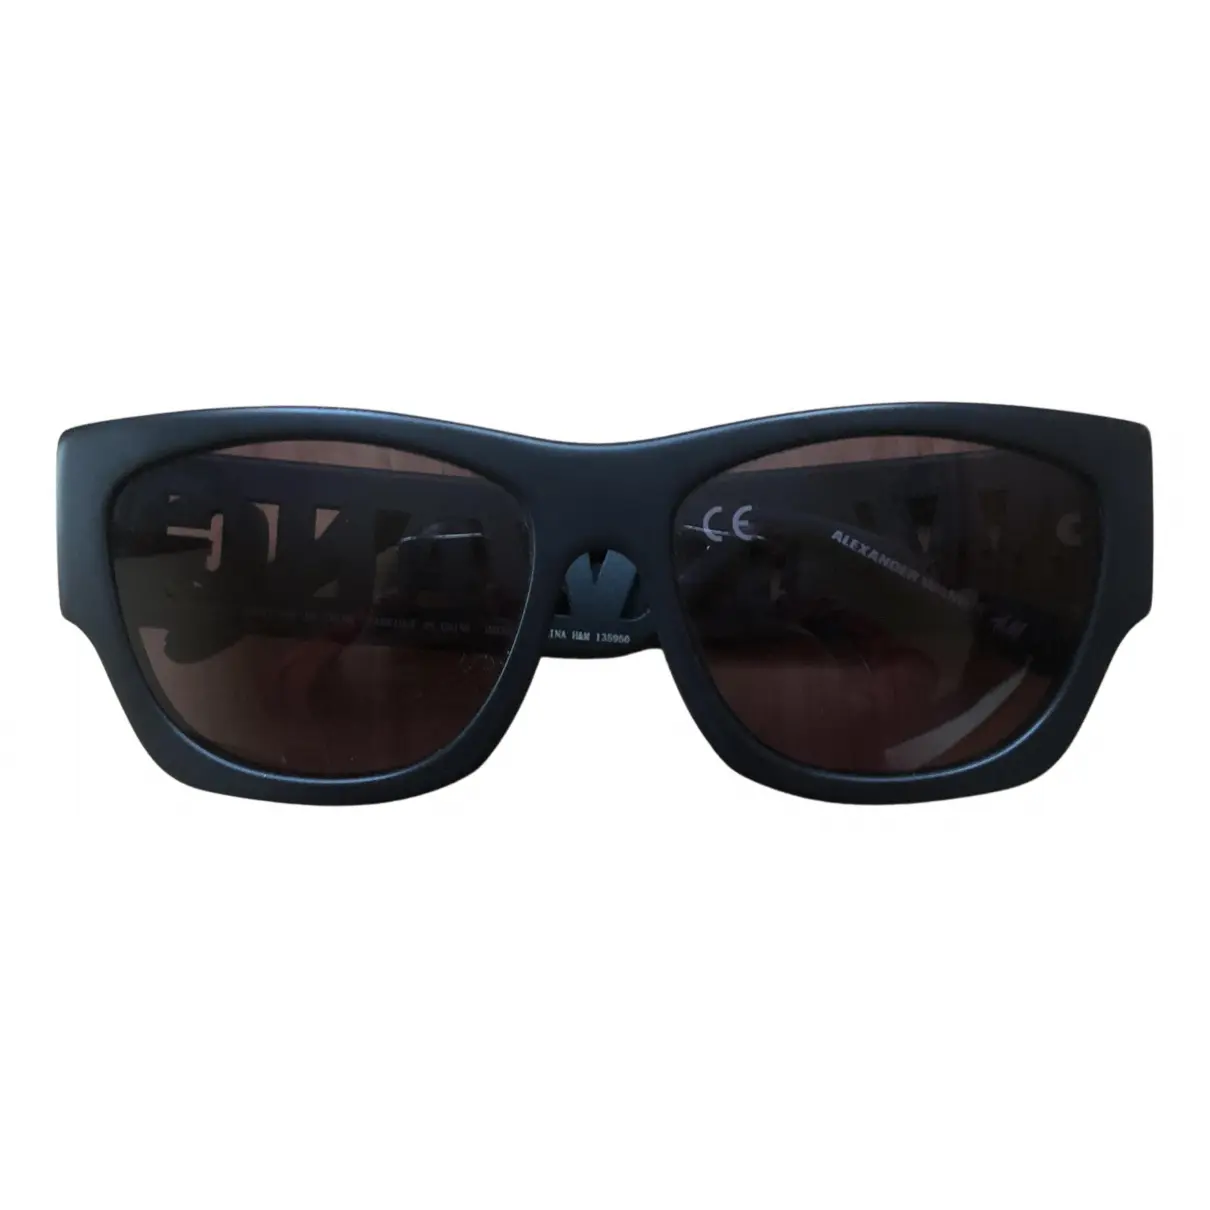 Sunglasses Alexander Wang Pour H&M